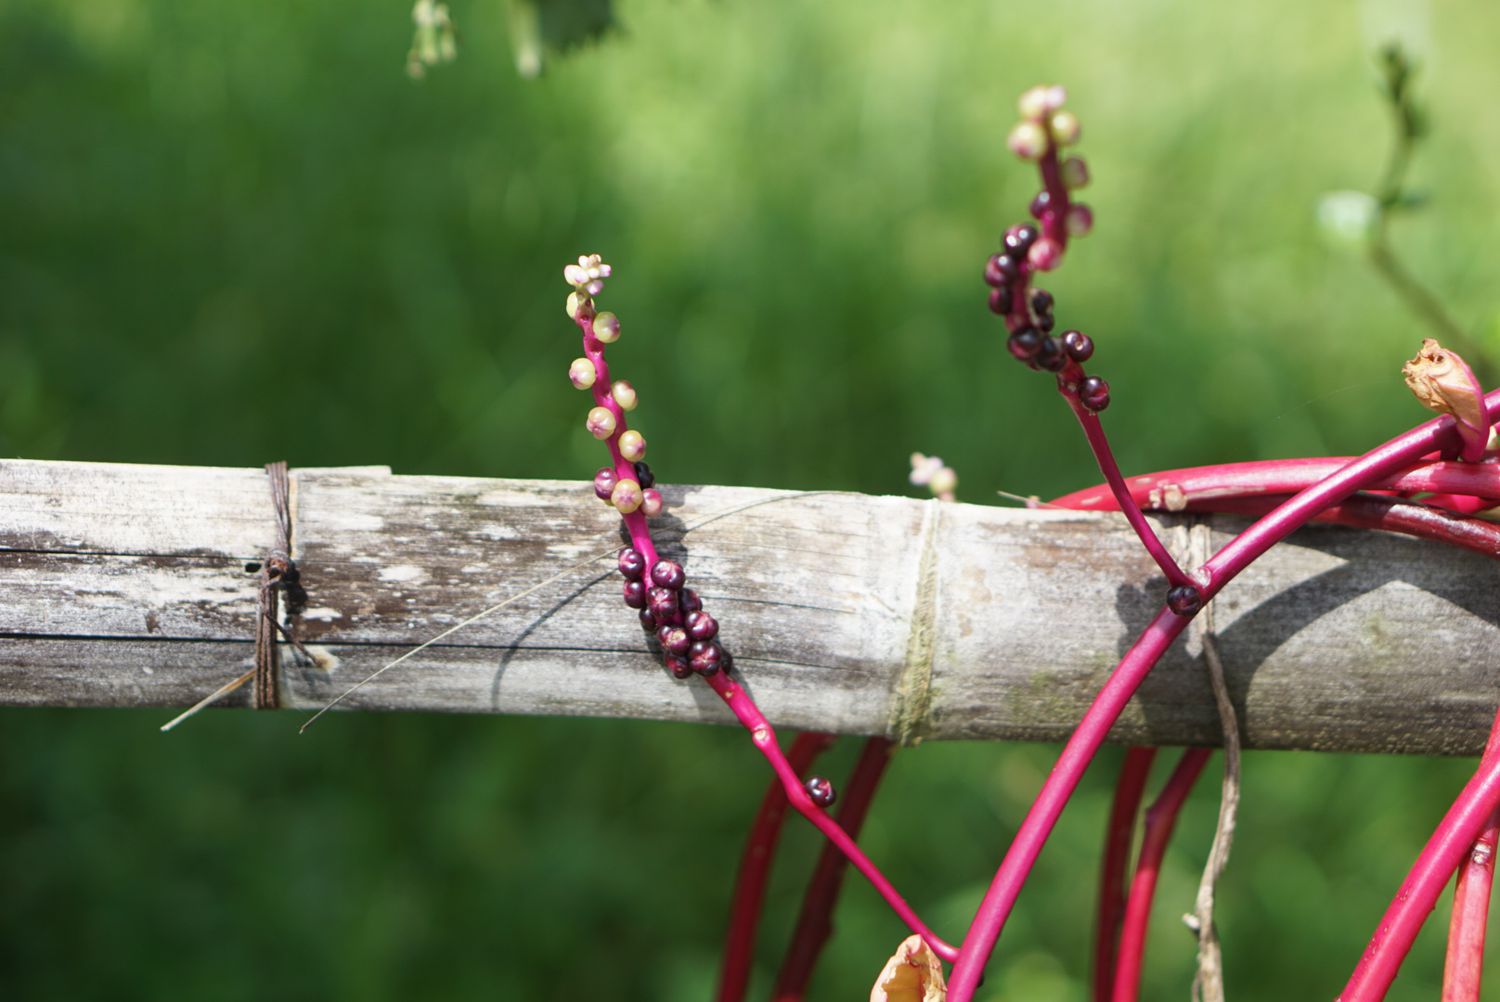 Malabarspinat rosa Ranken mit kleinen weißen und violetten Beeren an Zaunpfosten